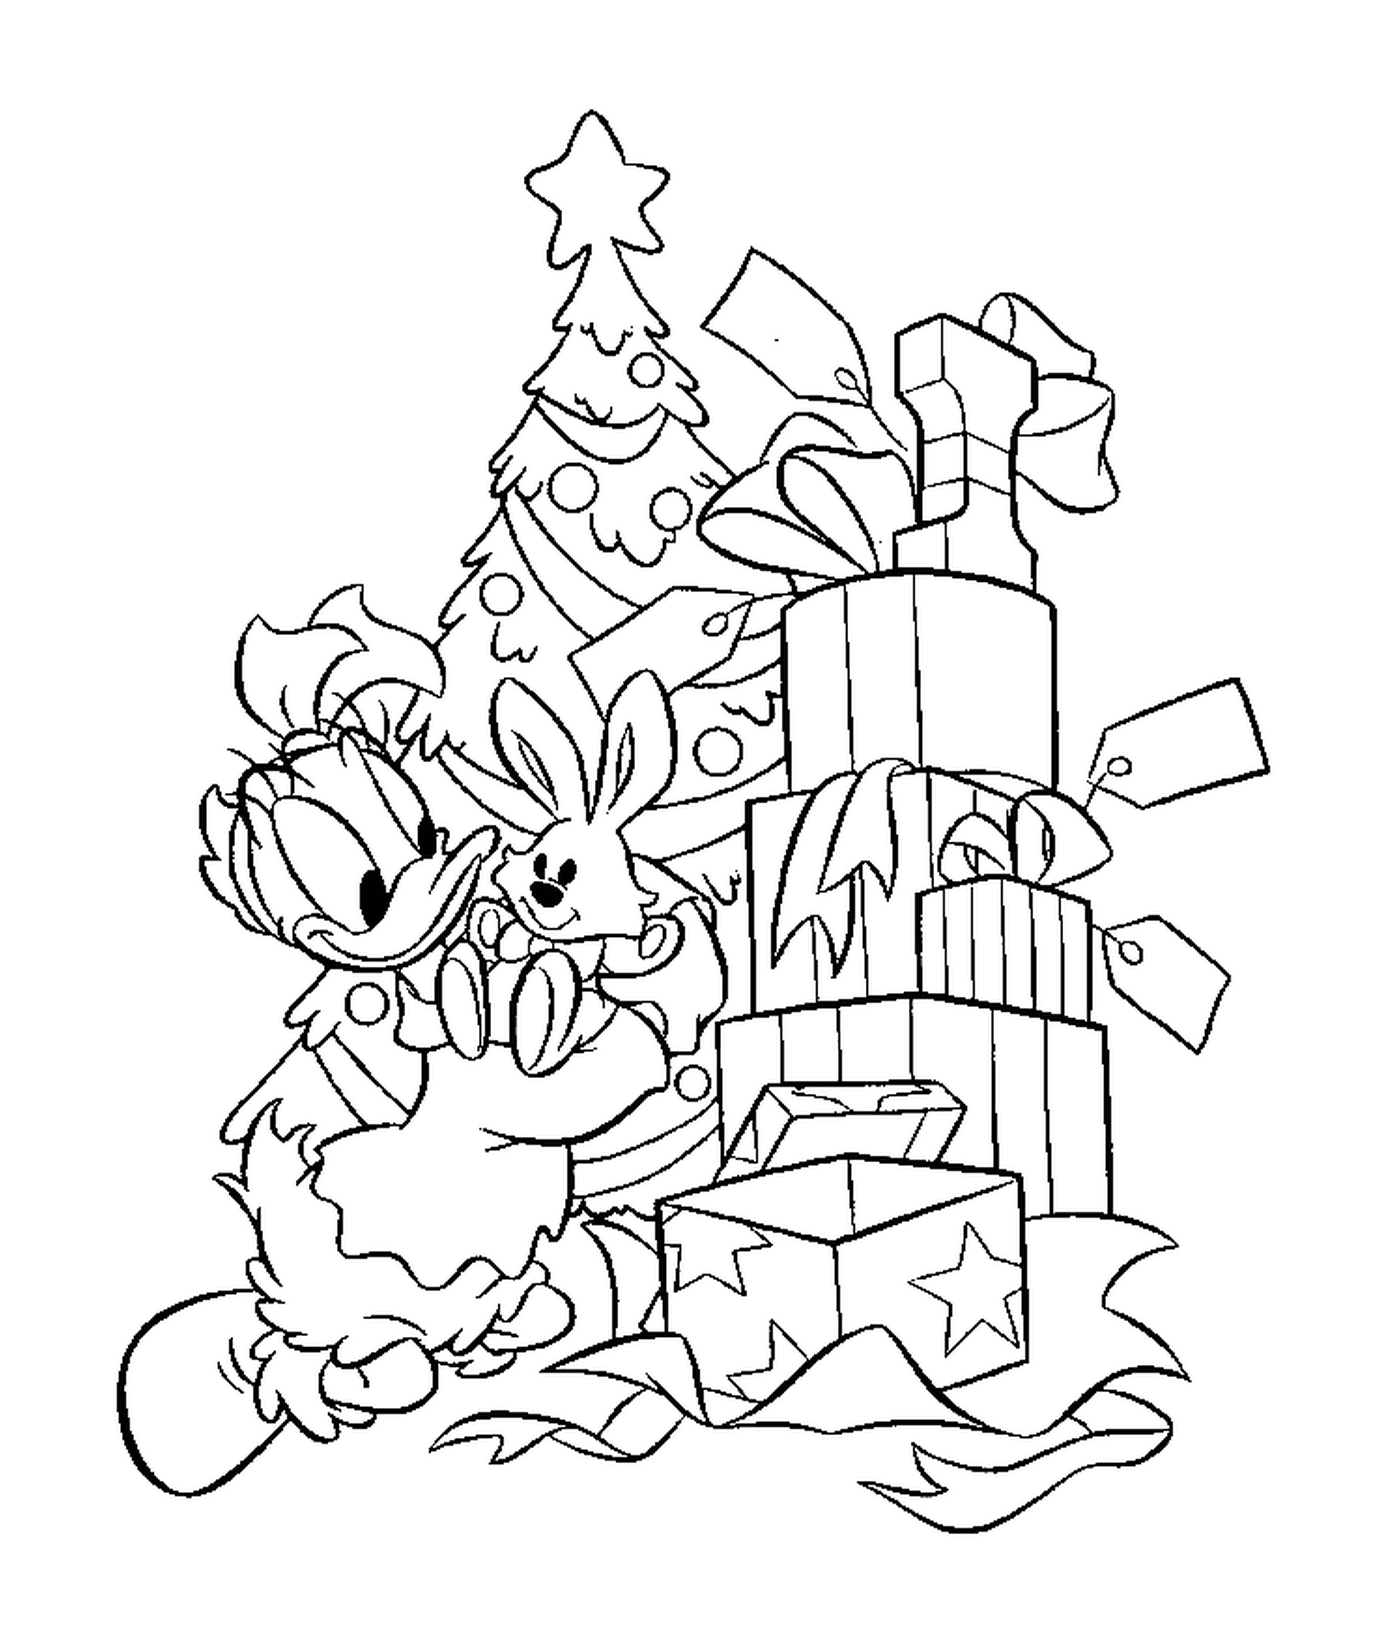  Daisy delante del árbol de Navidad y los regalos 